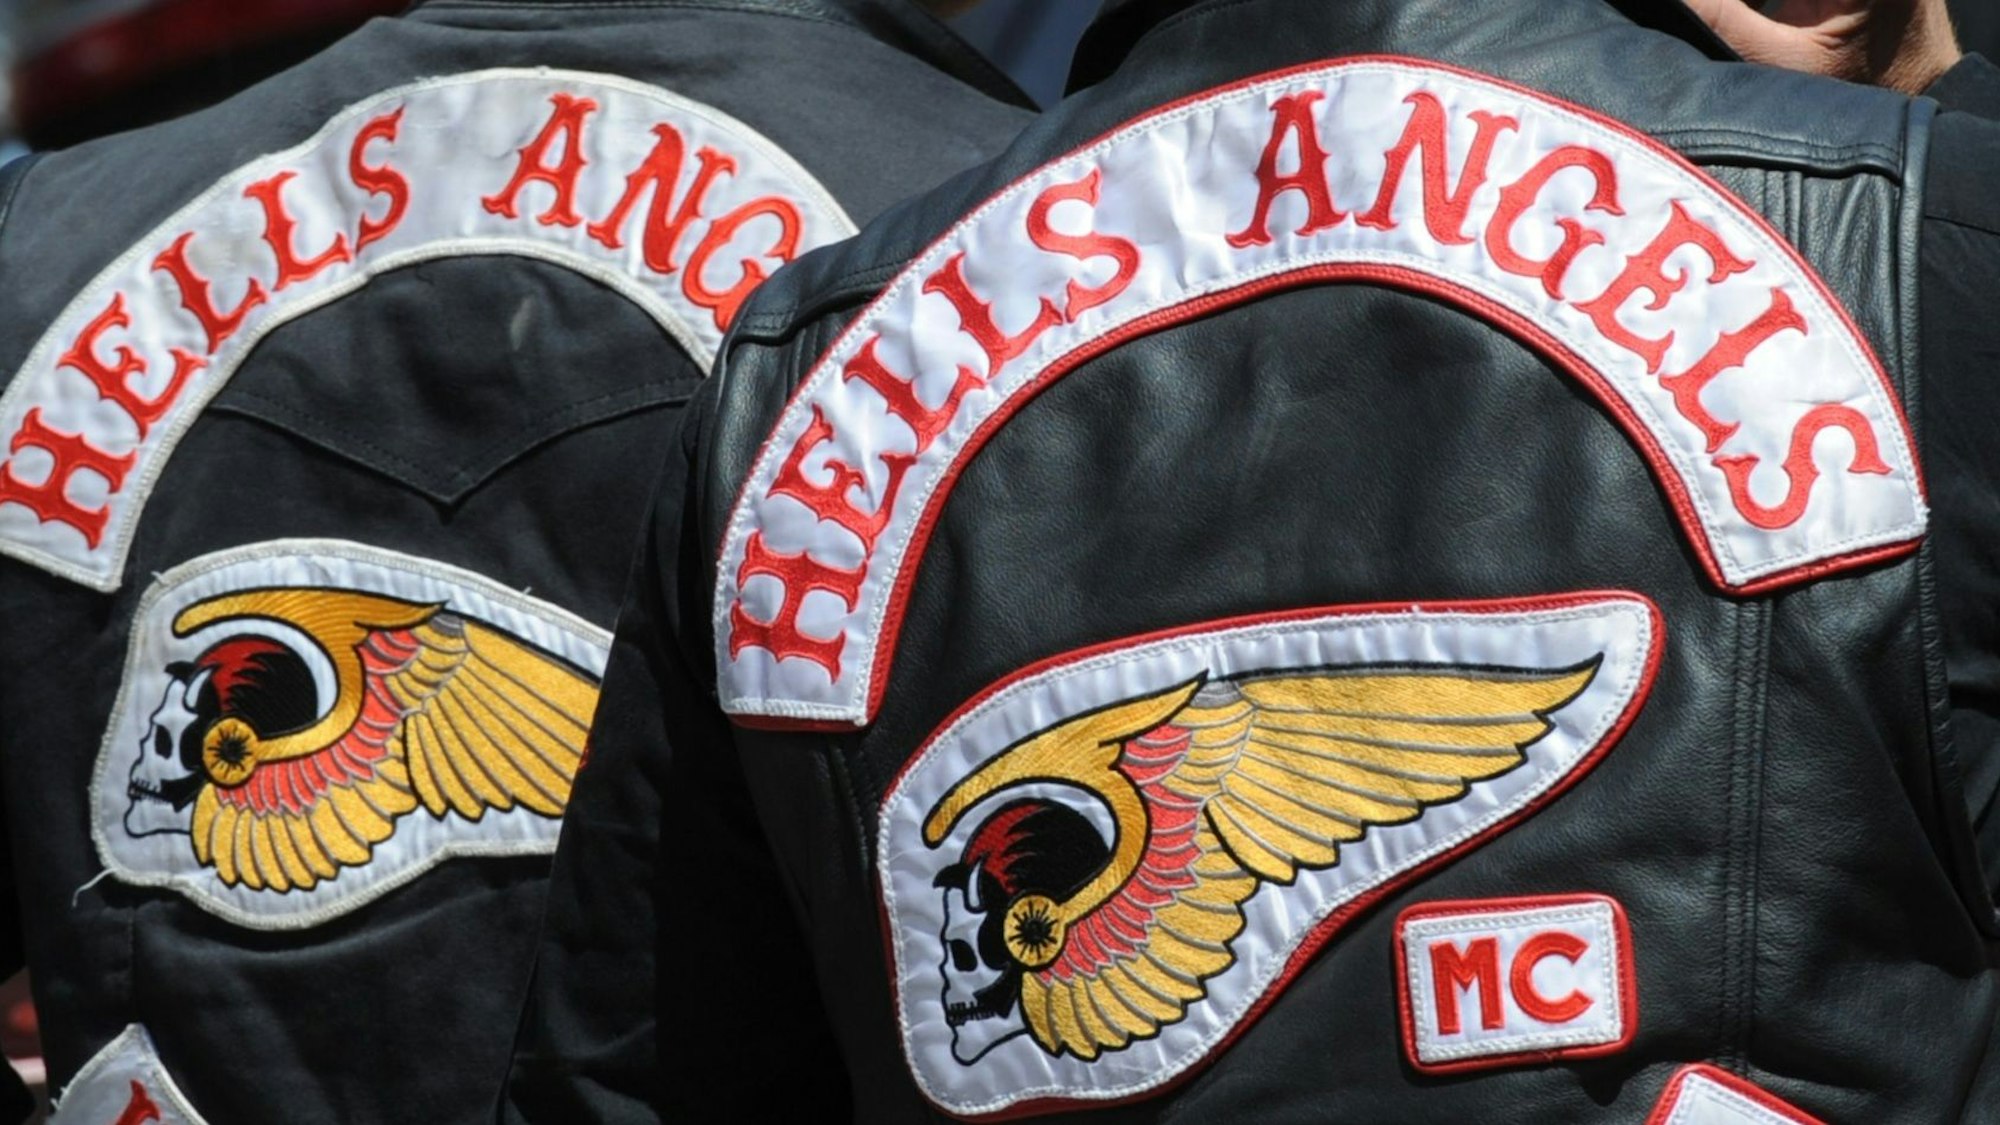 Zwei Hells Angels Mitglieder tragen am 16. Juni 2012 in Reutlingen (Baden-Württemberg) ihre Weste mit Logo der Hells Angels.